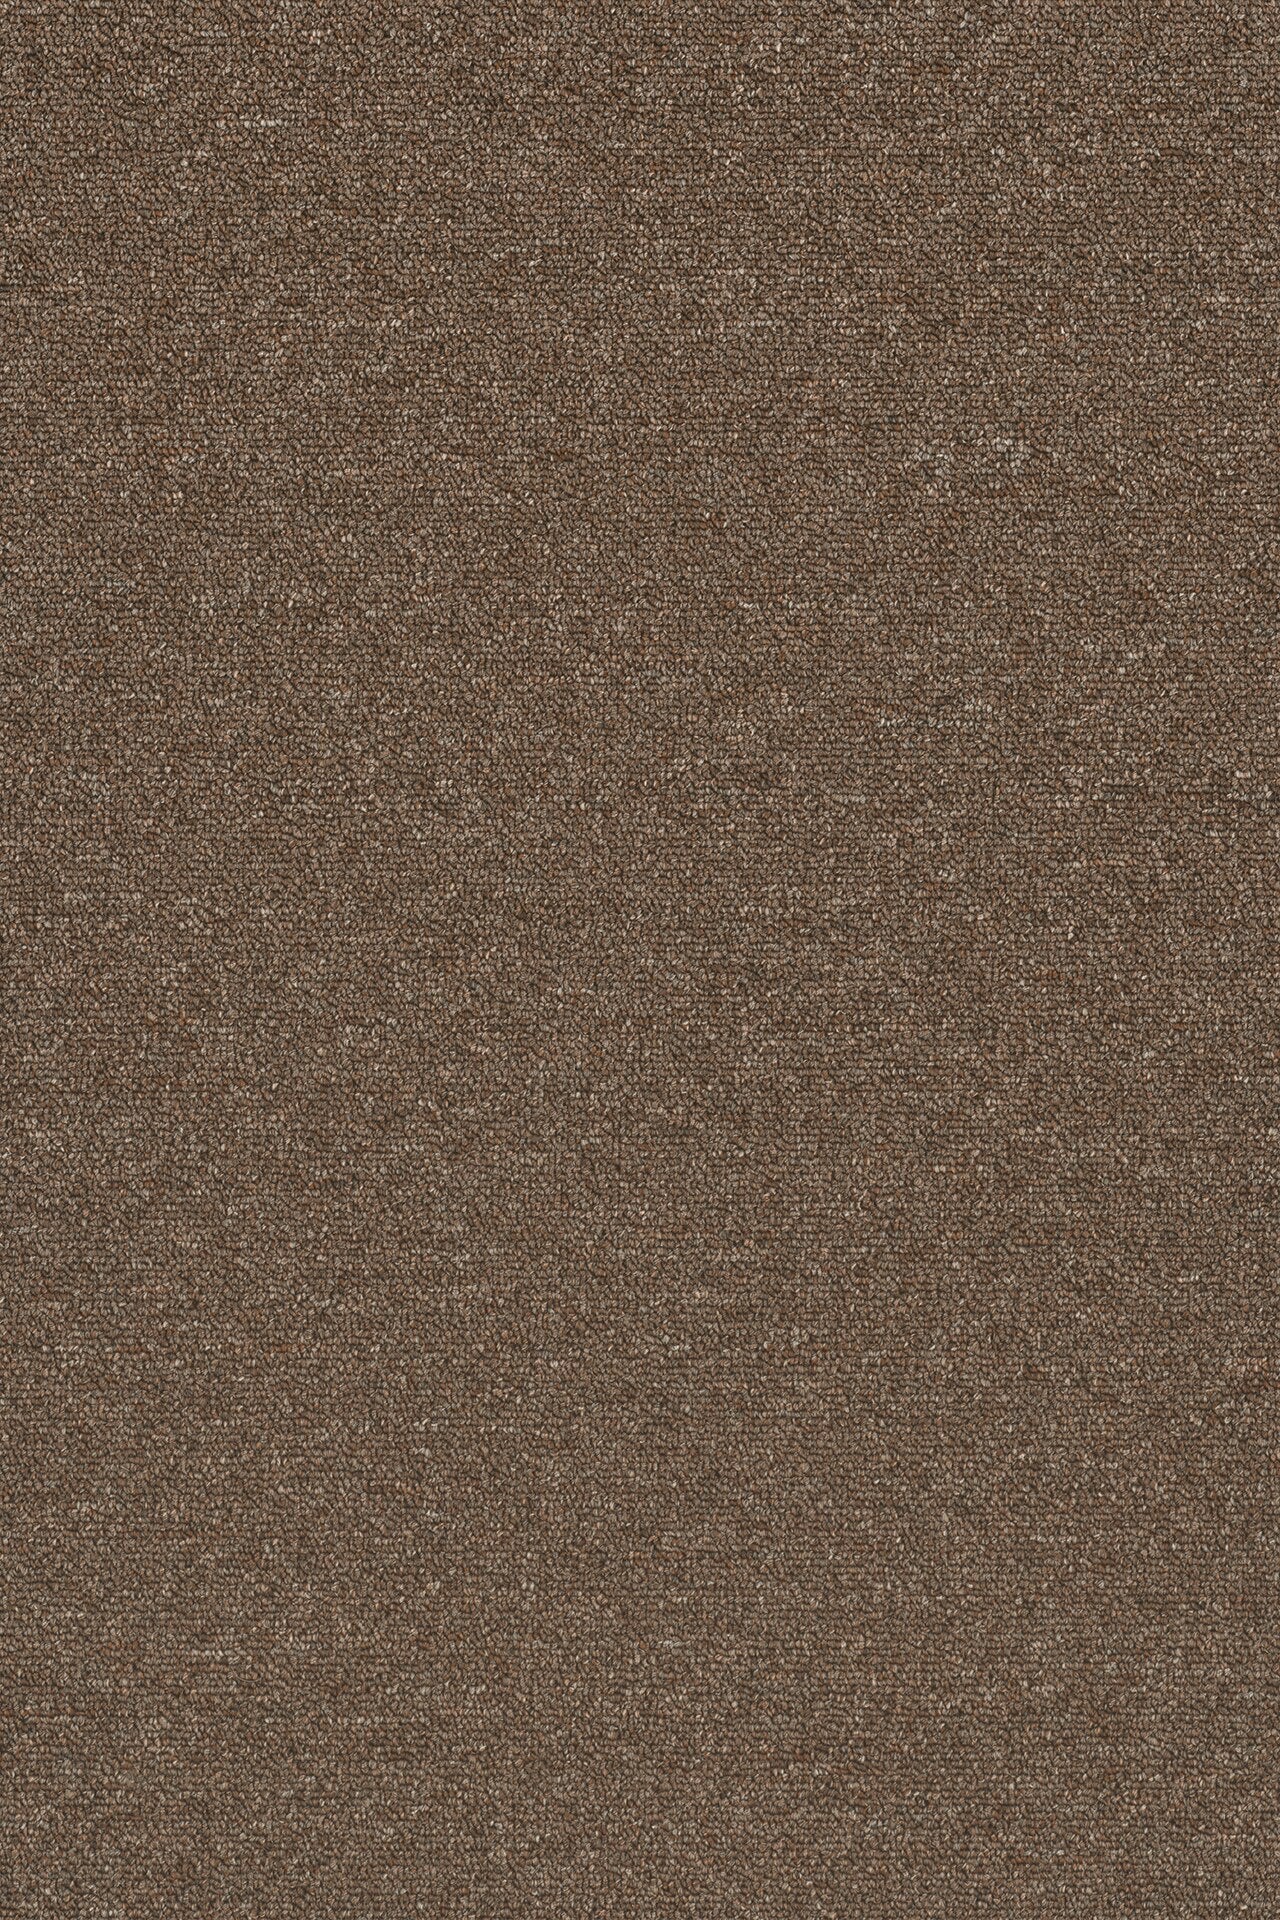 Commercial Carpet (ST)